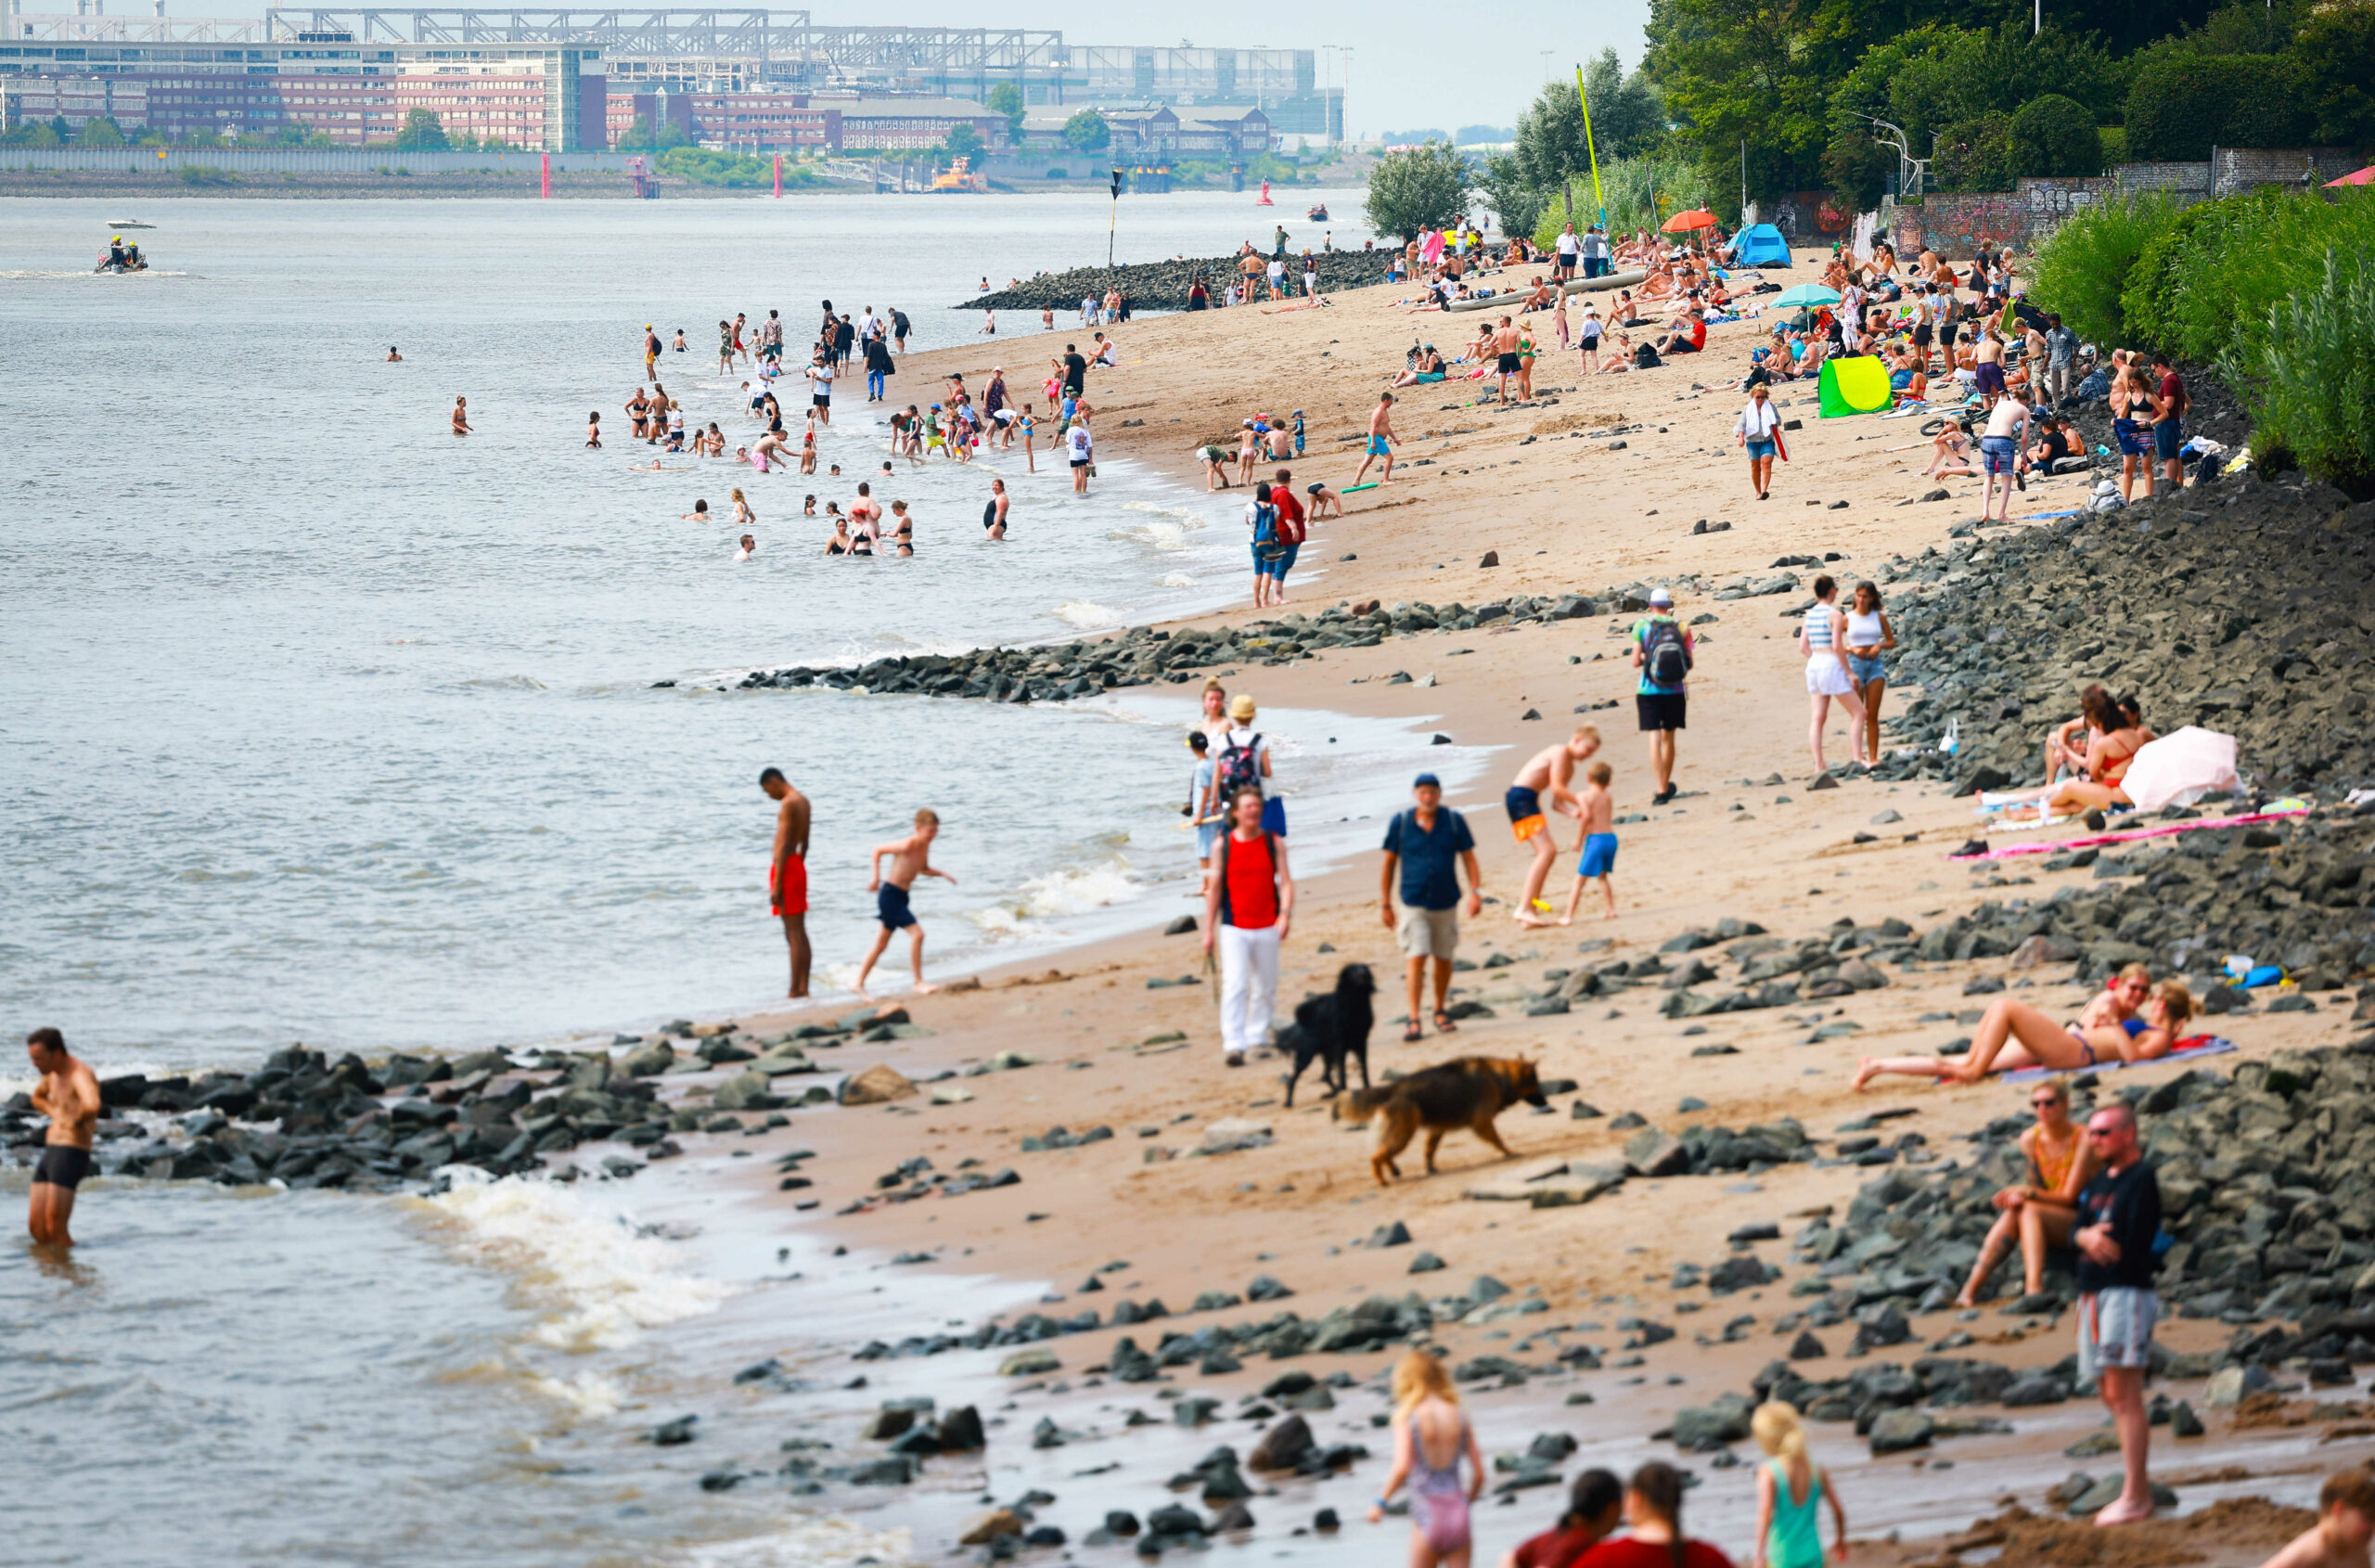 Zahlreiche Menschen sind bei hochsommerlichen Temperaturen am Elbstrand und in der Elbe bei Övelgönne zu sehen. (Archivfoto)